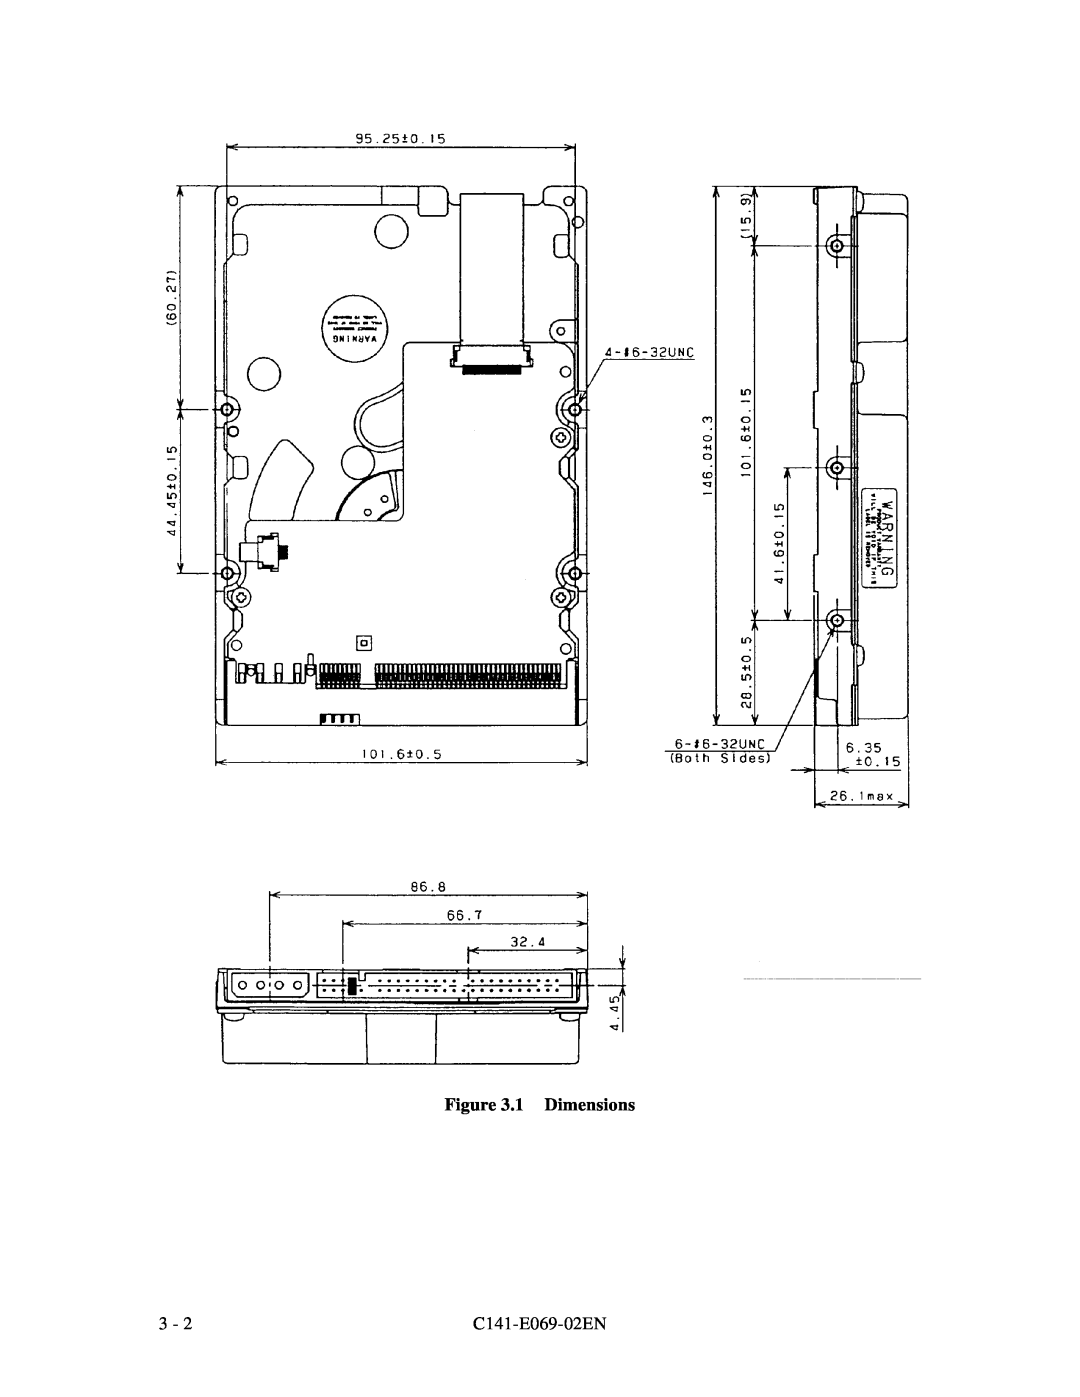 Fujitsu MPD3XXXAT manual 1 Dimensions, C141-E069-02EN 